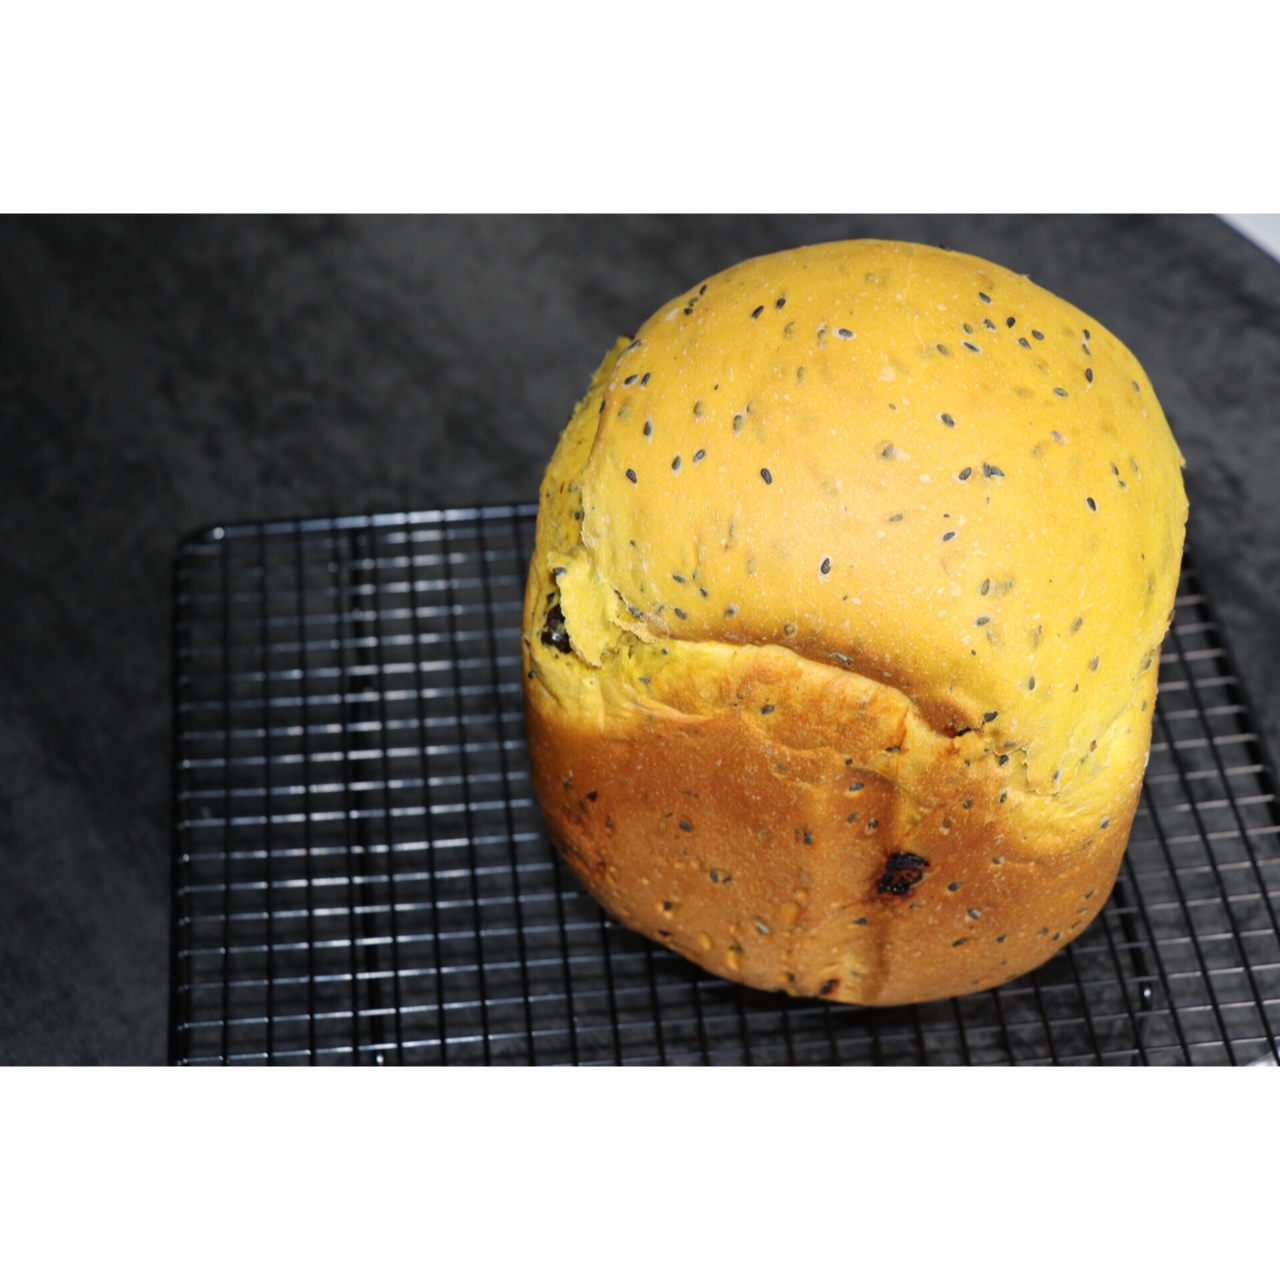 南瓜芝麻面包——天然的色彩揉进面团里